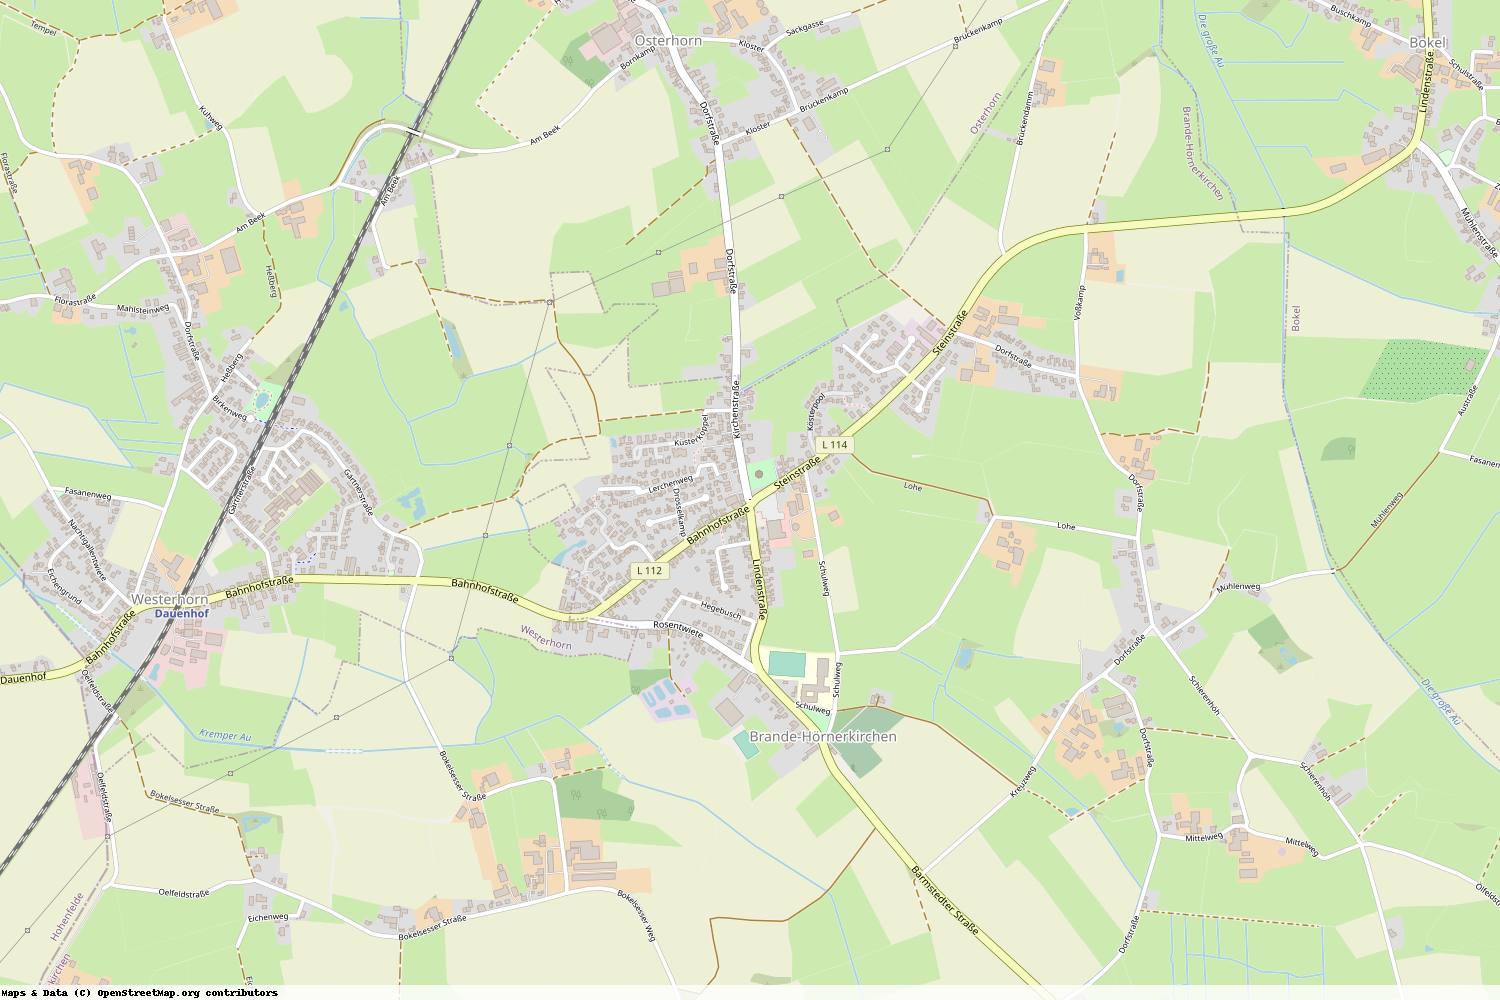 Ist gerade Stromausfall in Schleswig-Holstein - Pinneberg - Brande-Hörnerkirchen?